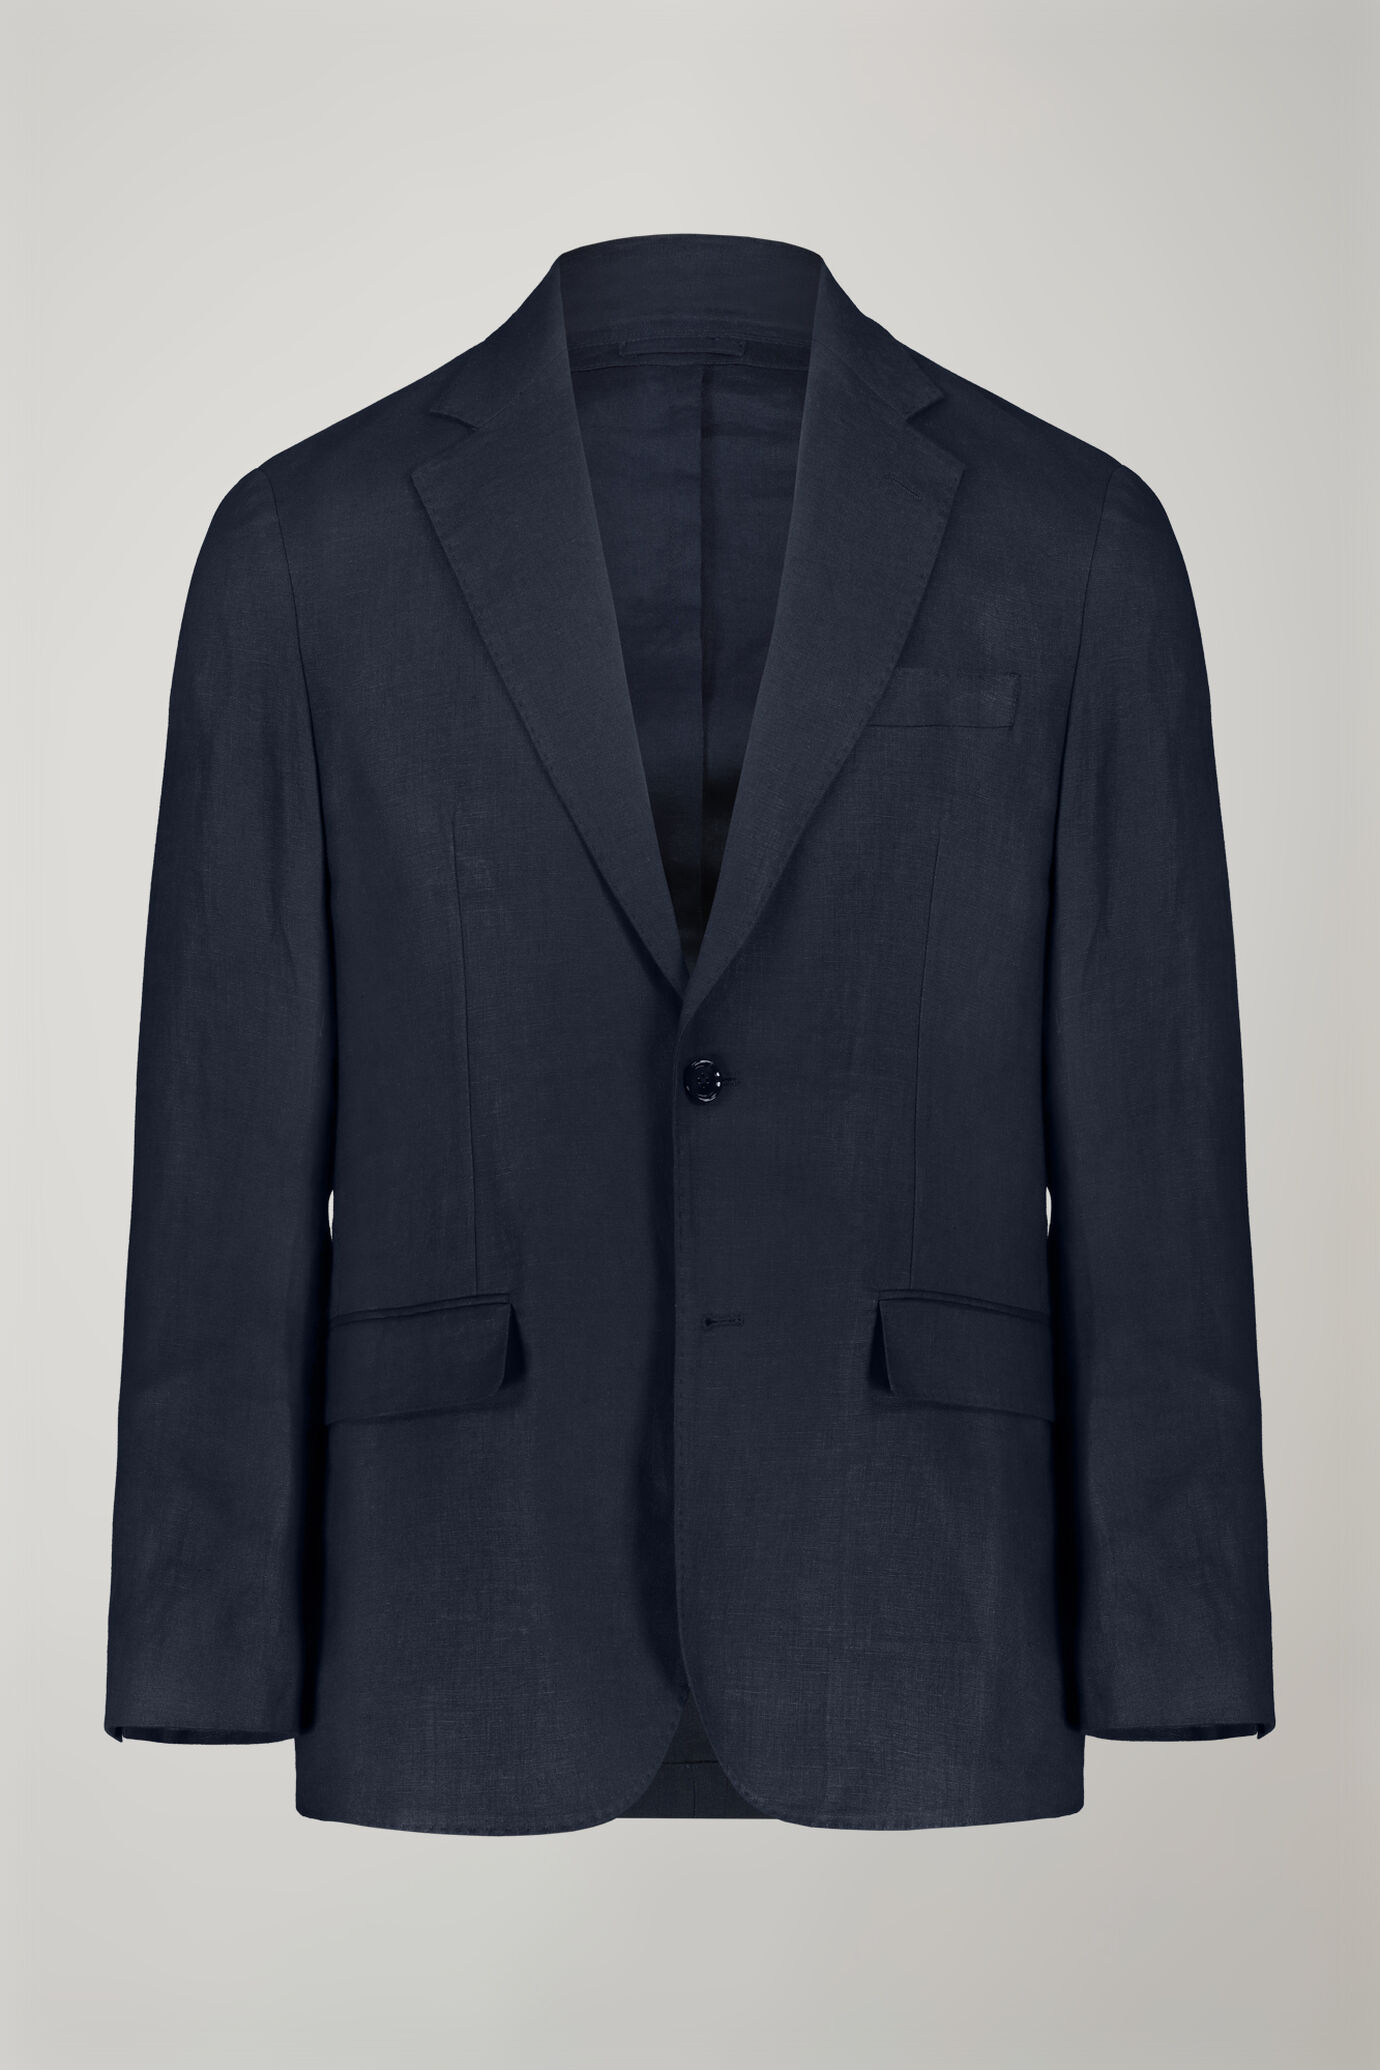 Men's single-breasted 100% linen regular fit suit image number 4